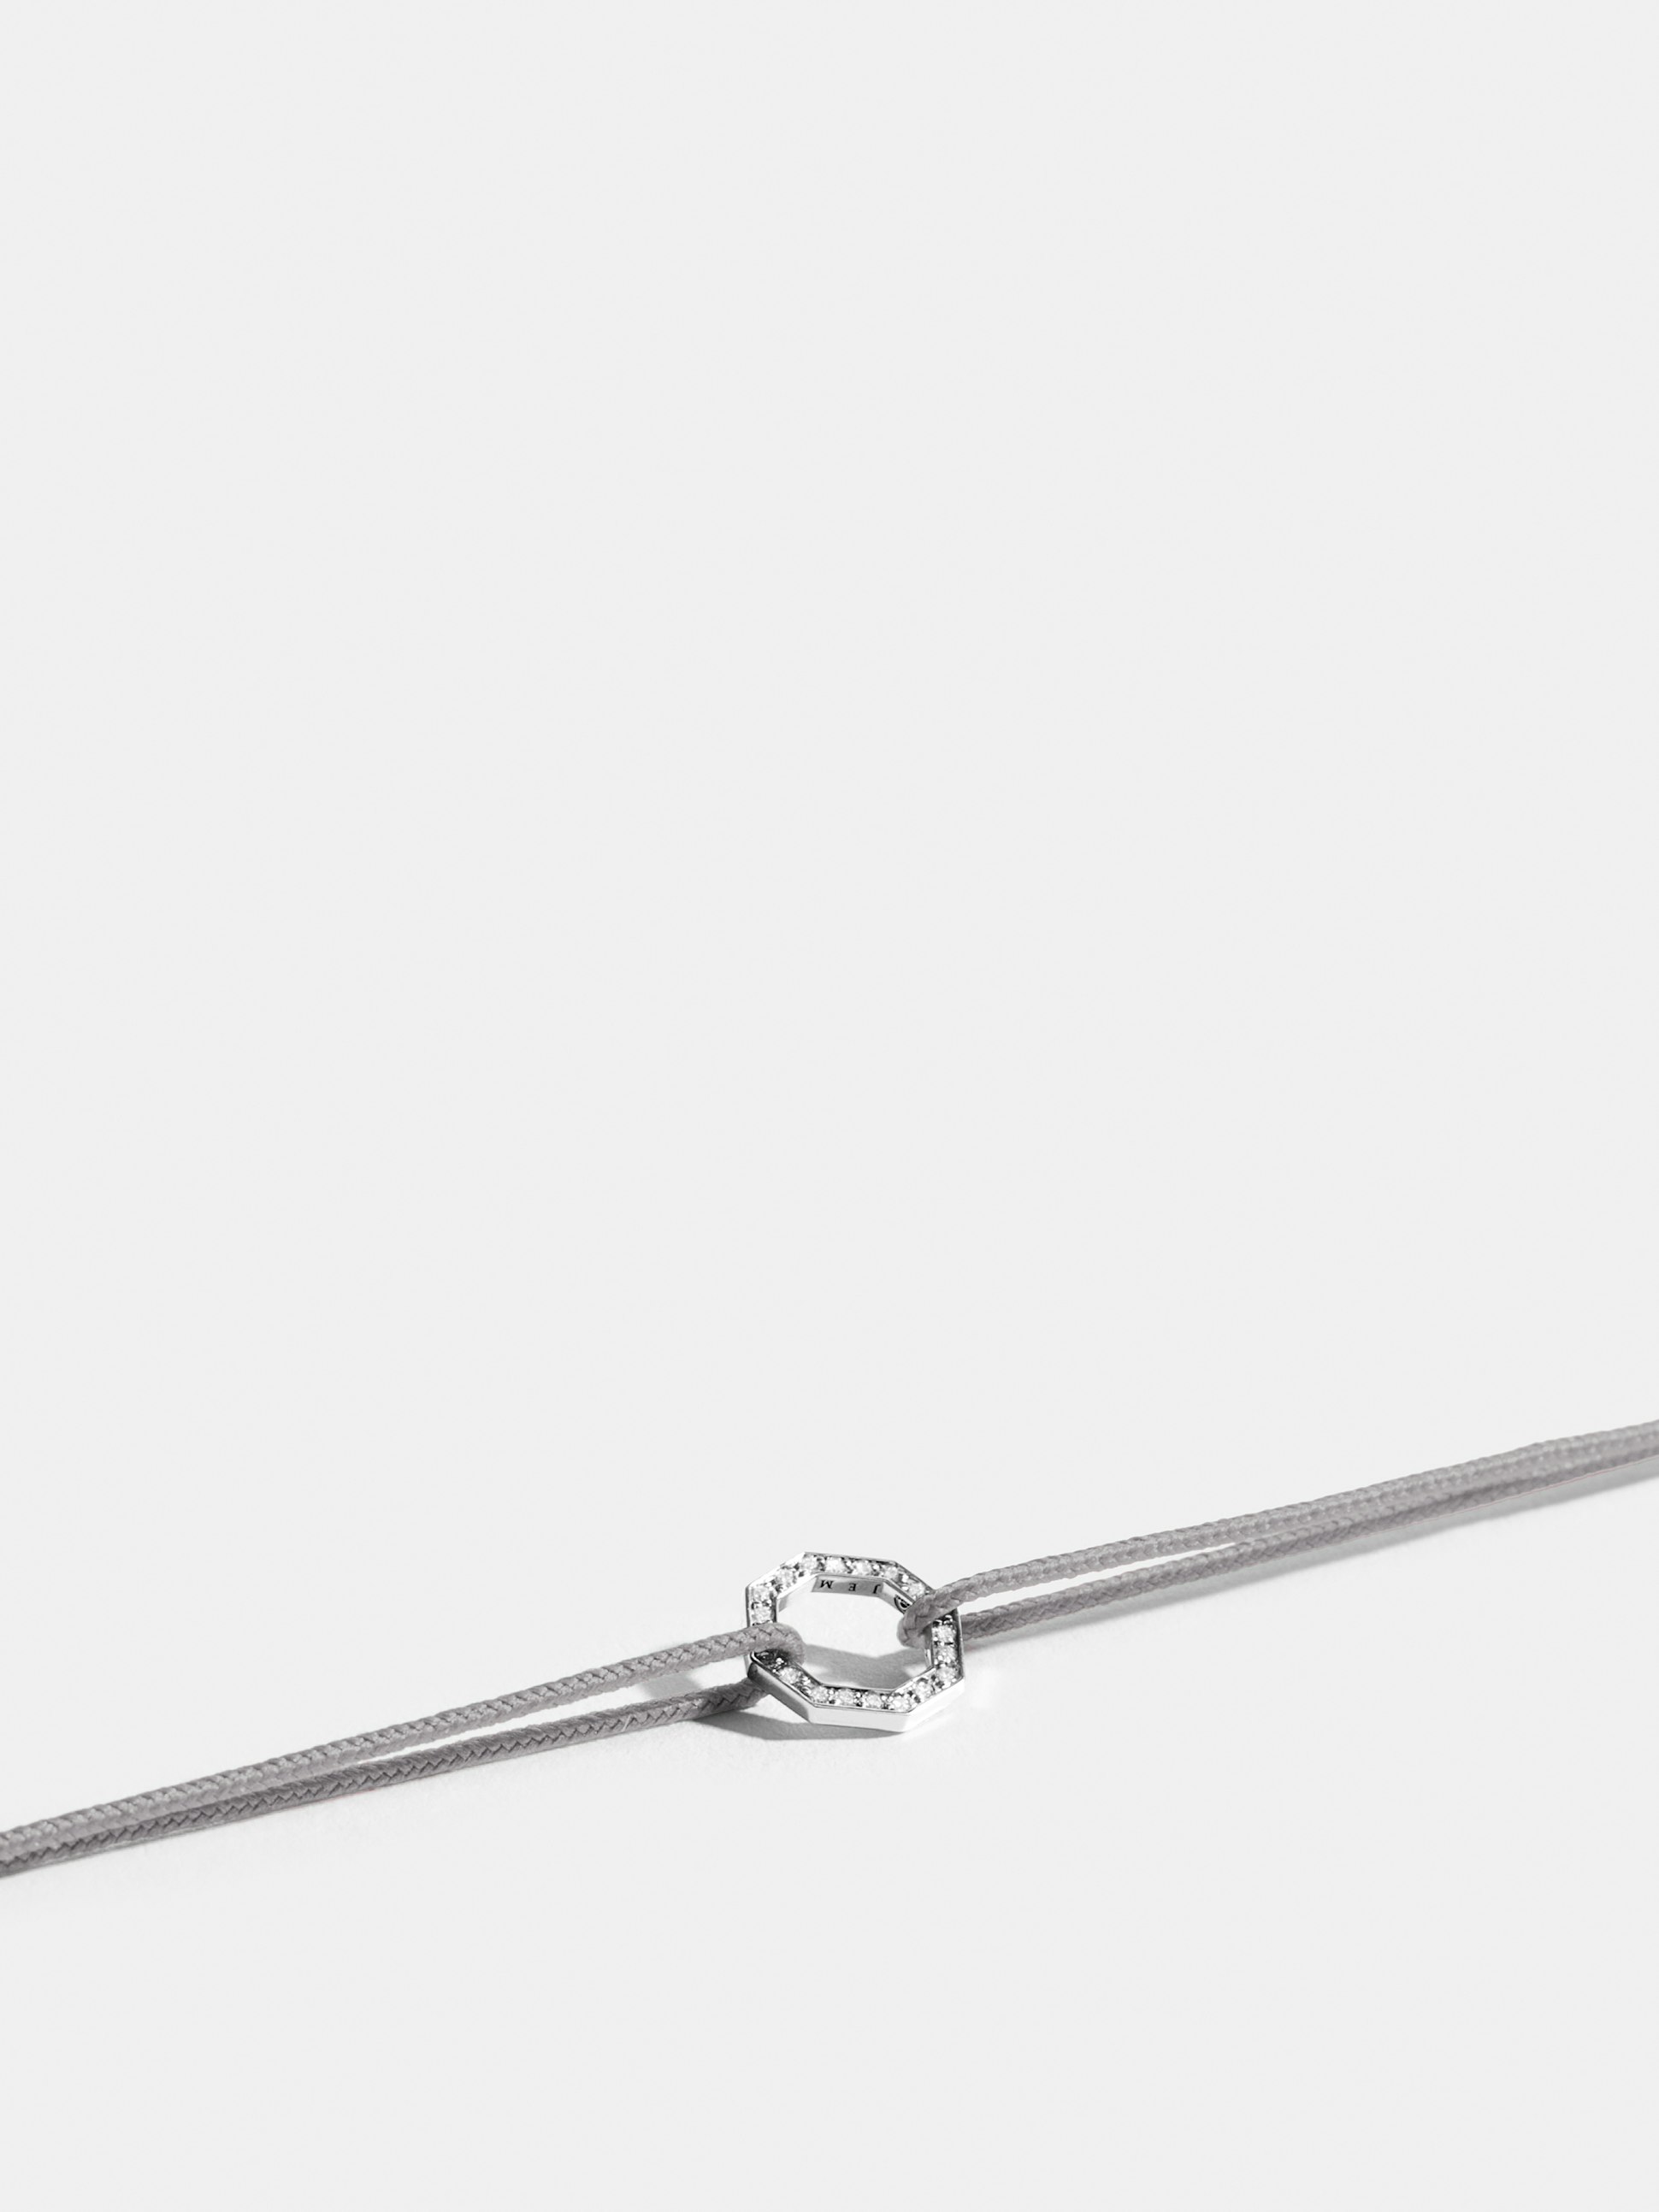 Motif Octogone en Or blanc éthique 18 carats certifié Fairmined et pavé de diamants de synthèse, sur cordon gris perlé.